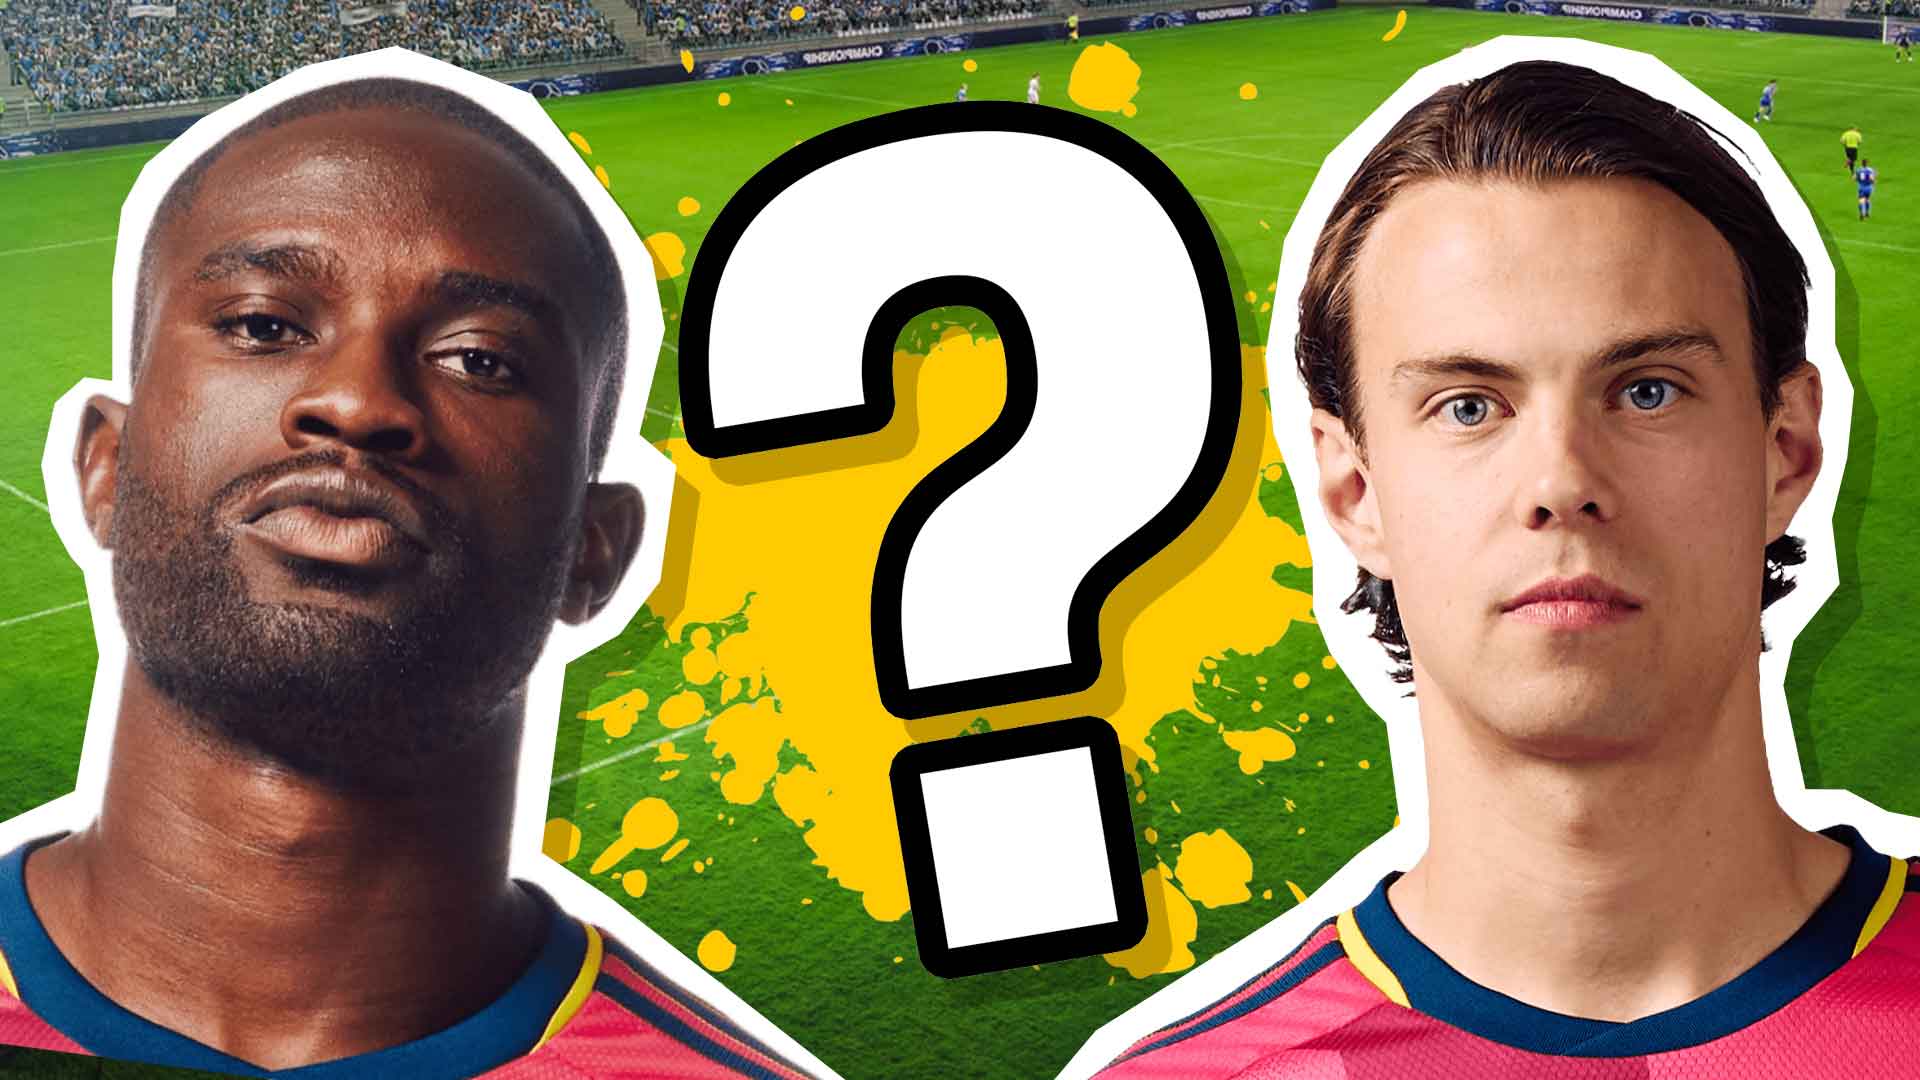 Como seria sua carreira no futebol europeu? #quiz #futebol #qualvocepr, Would You Rather Questions